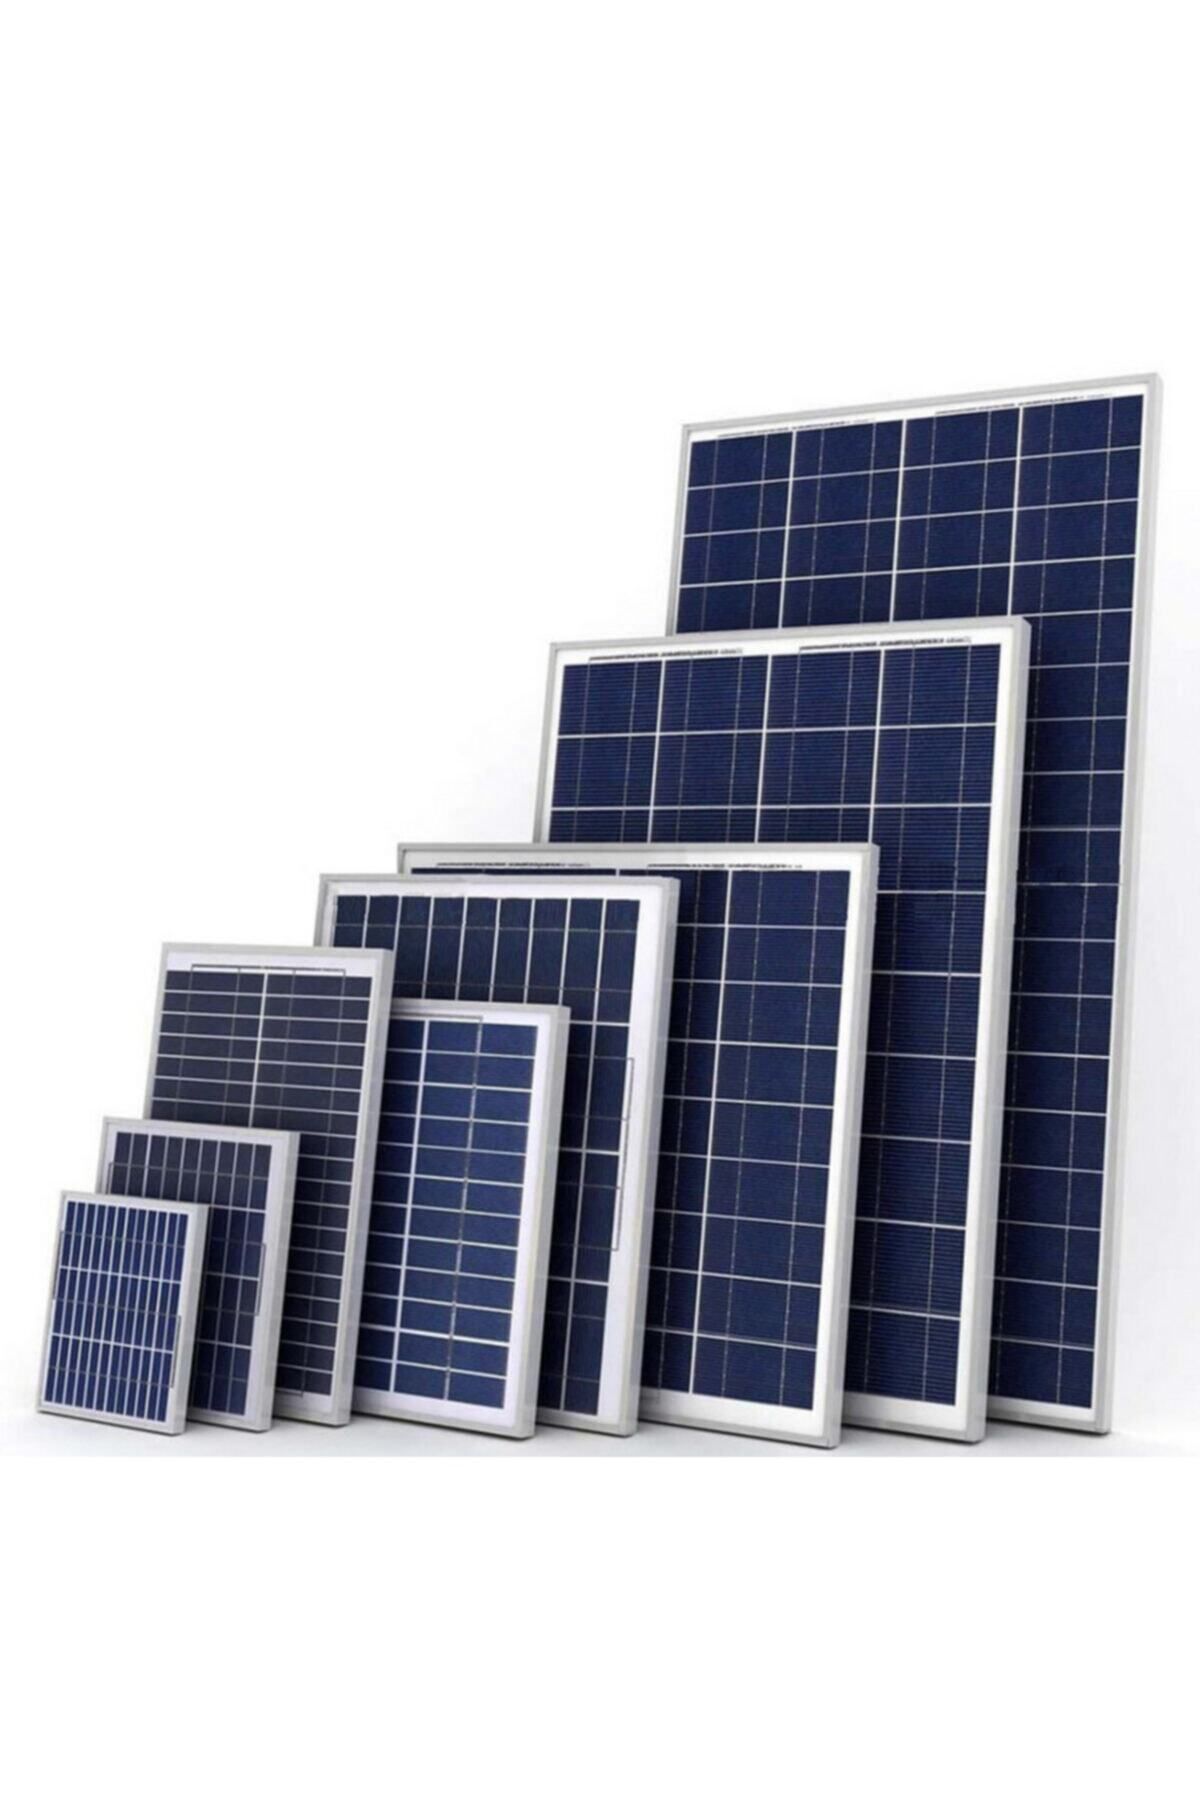 Gookir Global 25 Watt Monokristal Güneş Paneli - Solar Panel - Türk Malı